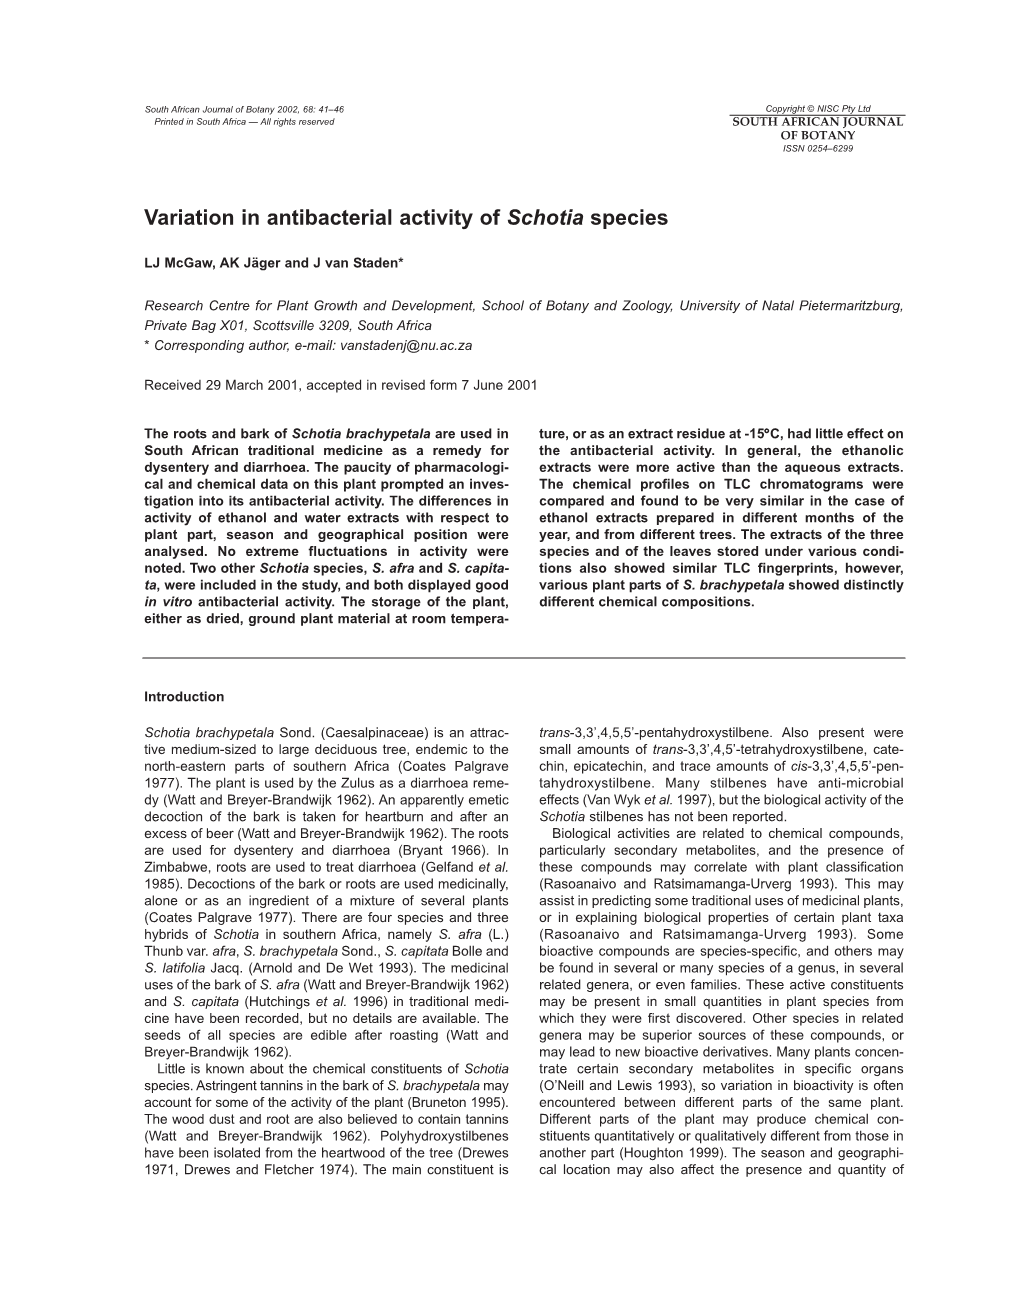 Variation in Antibacterial Activity of Schotia Species